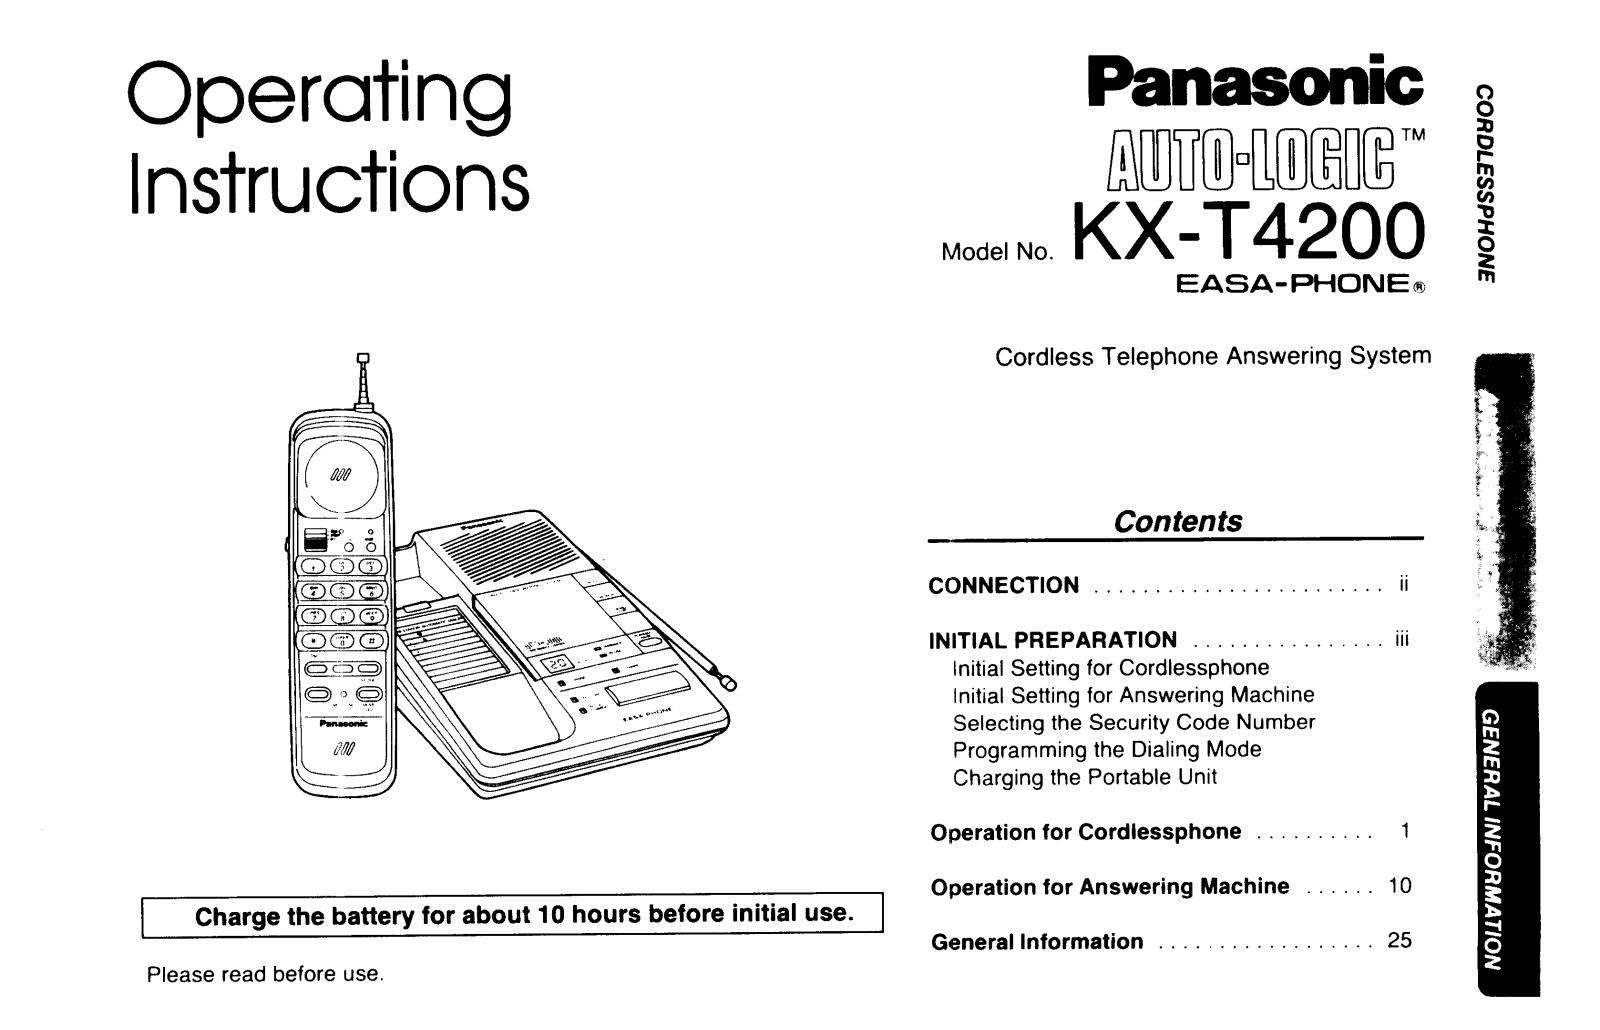 Panasonic kx-t4200 Operation Manual